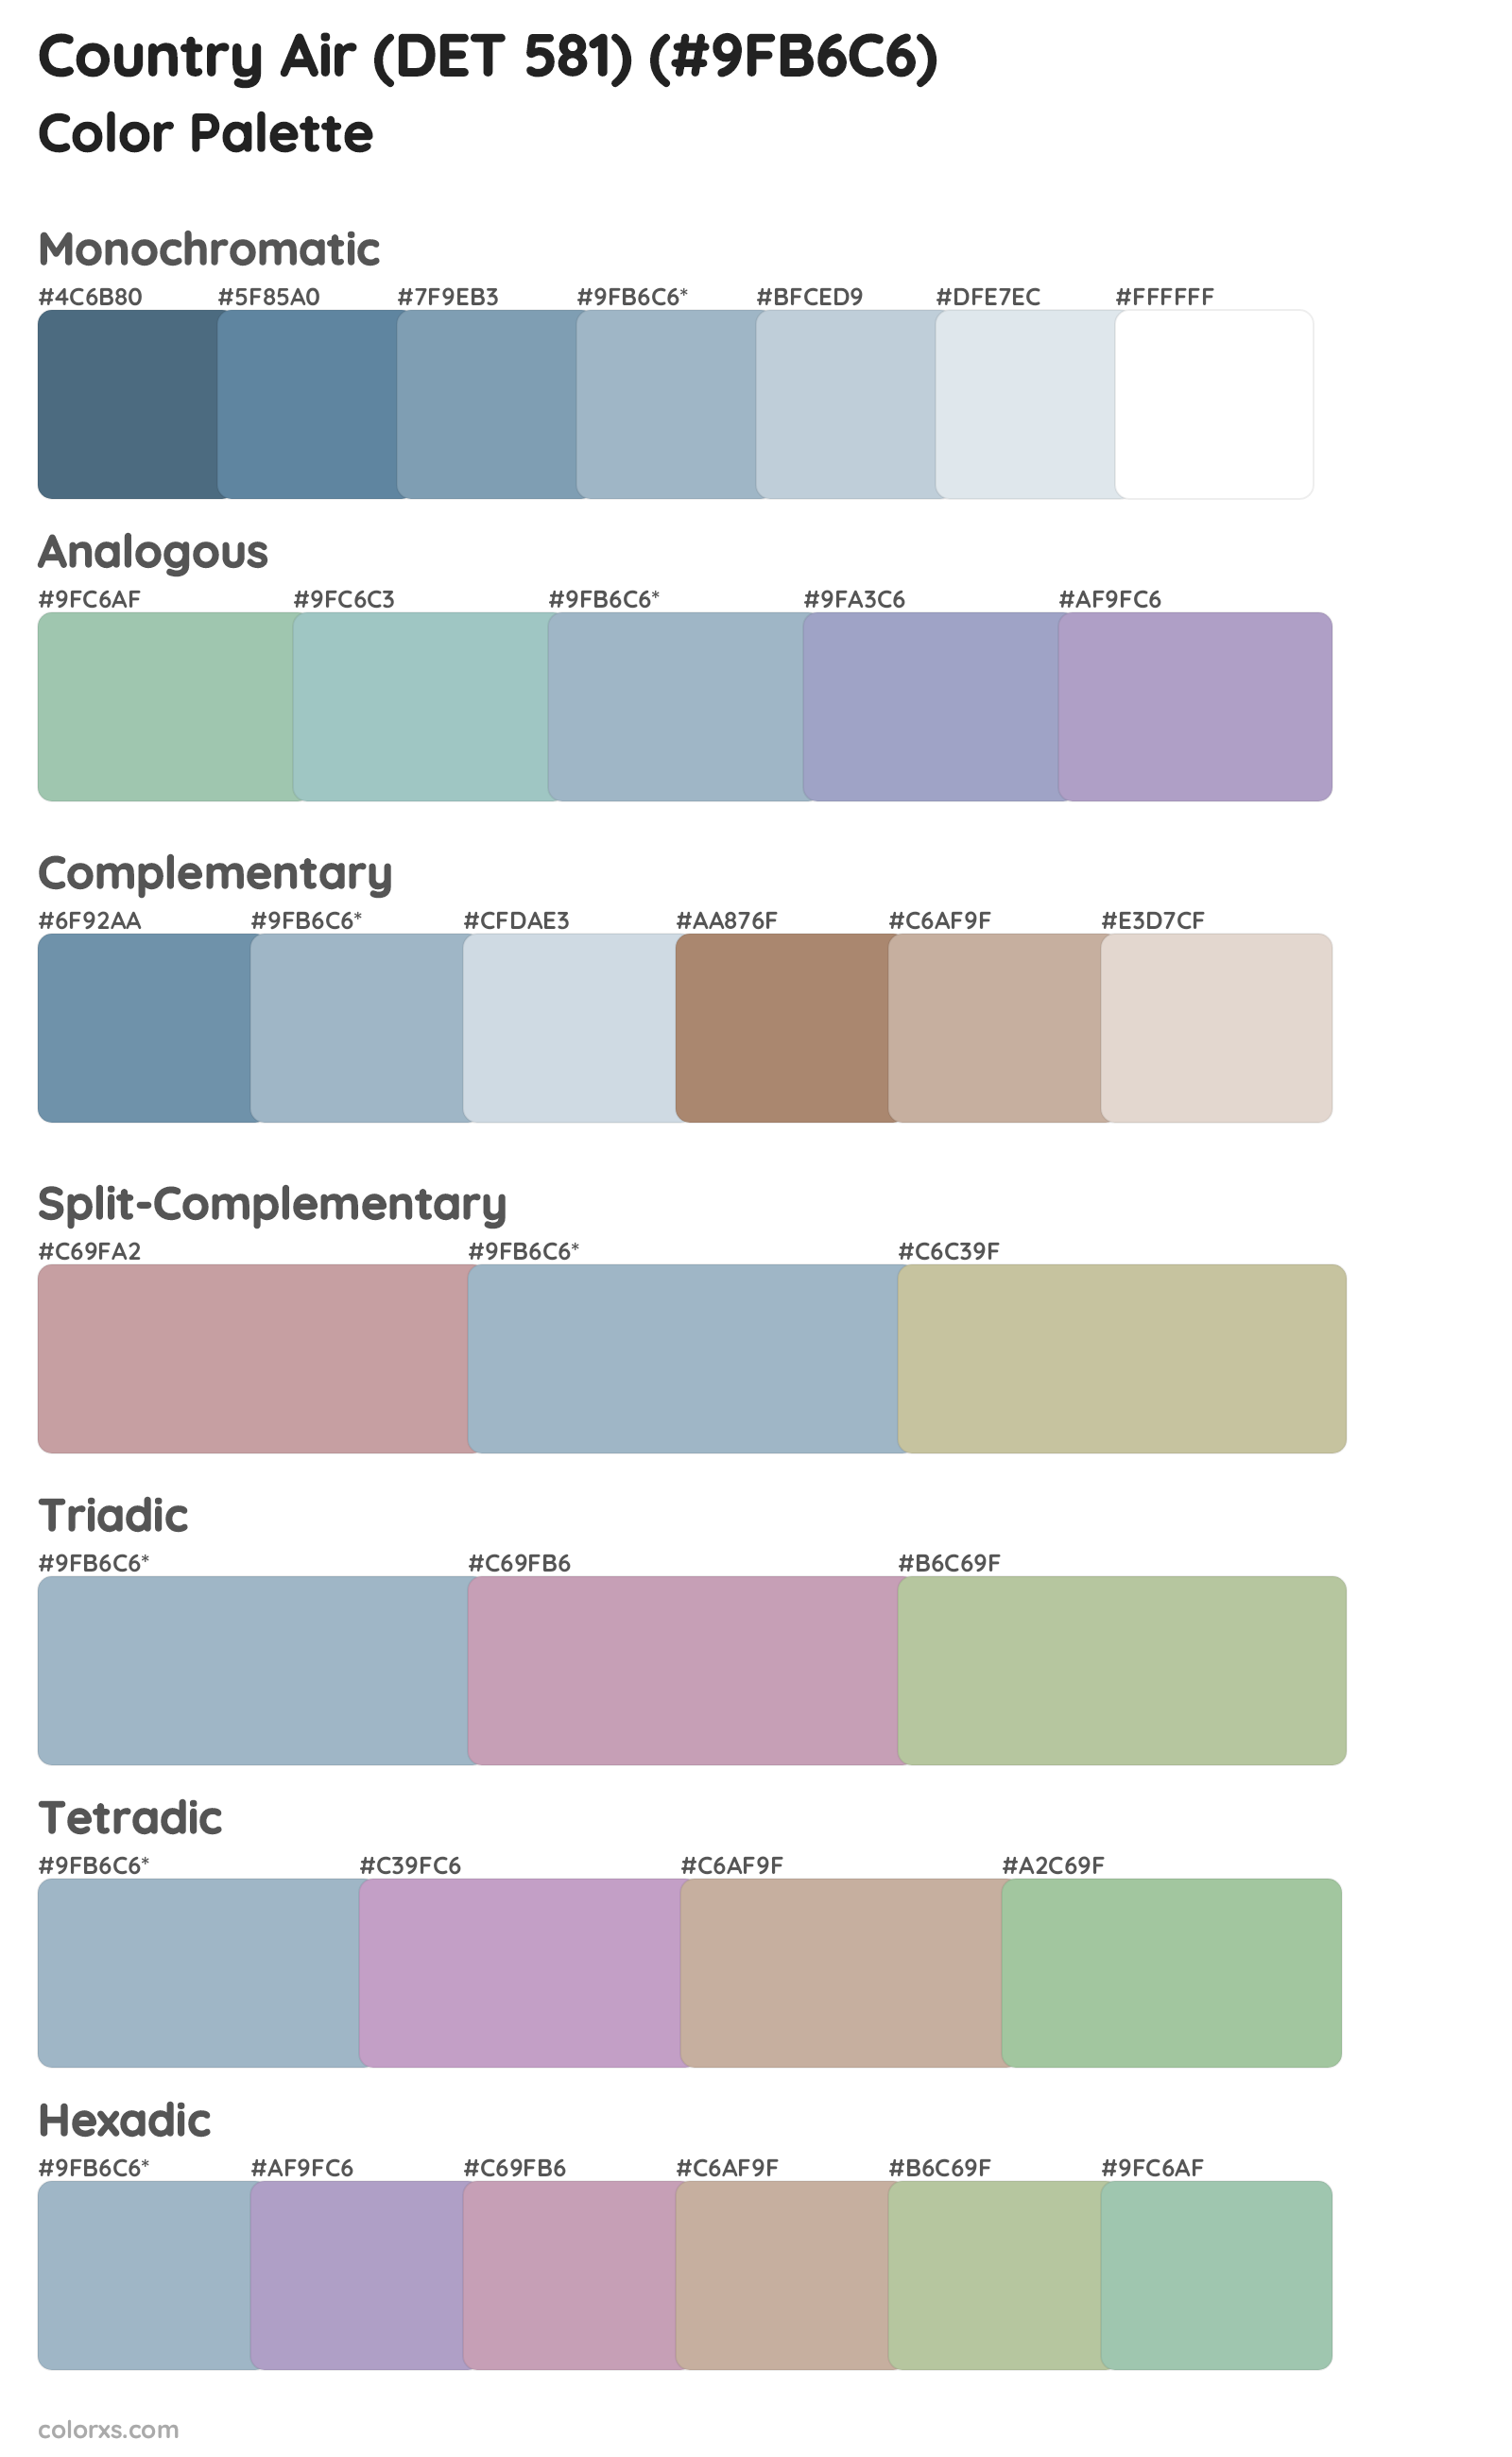 Country Air (DET 581) Color Scheme Palettes